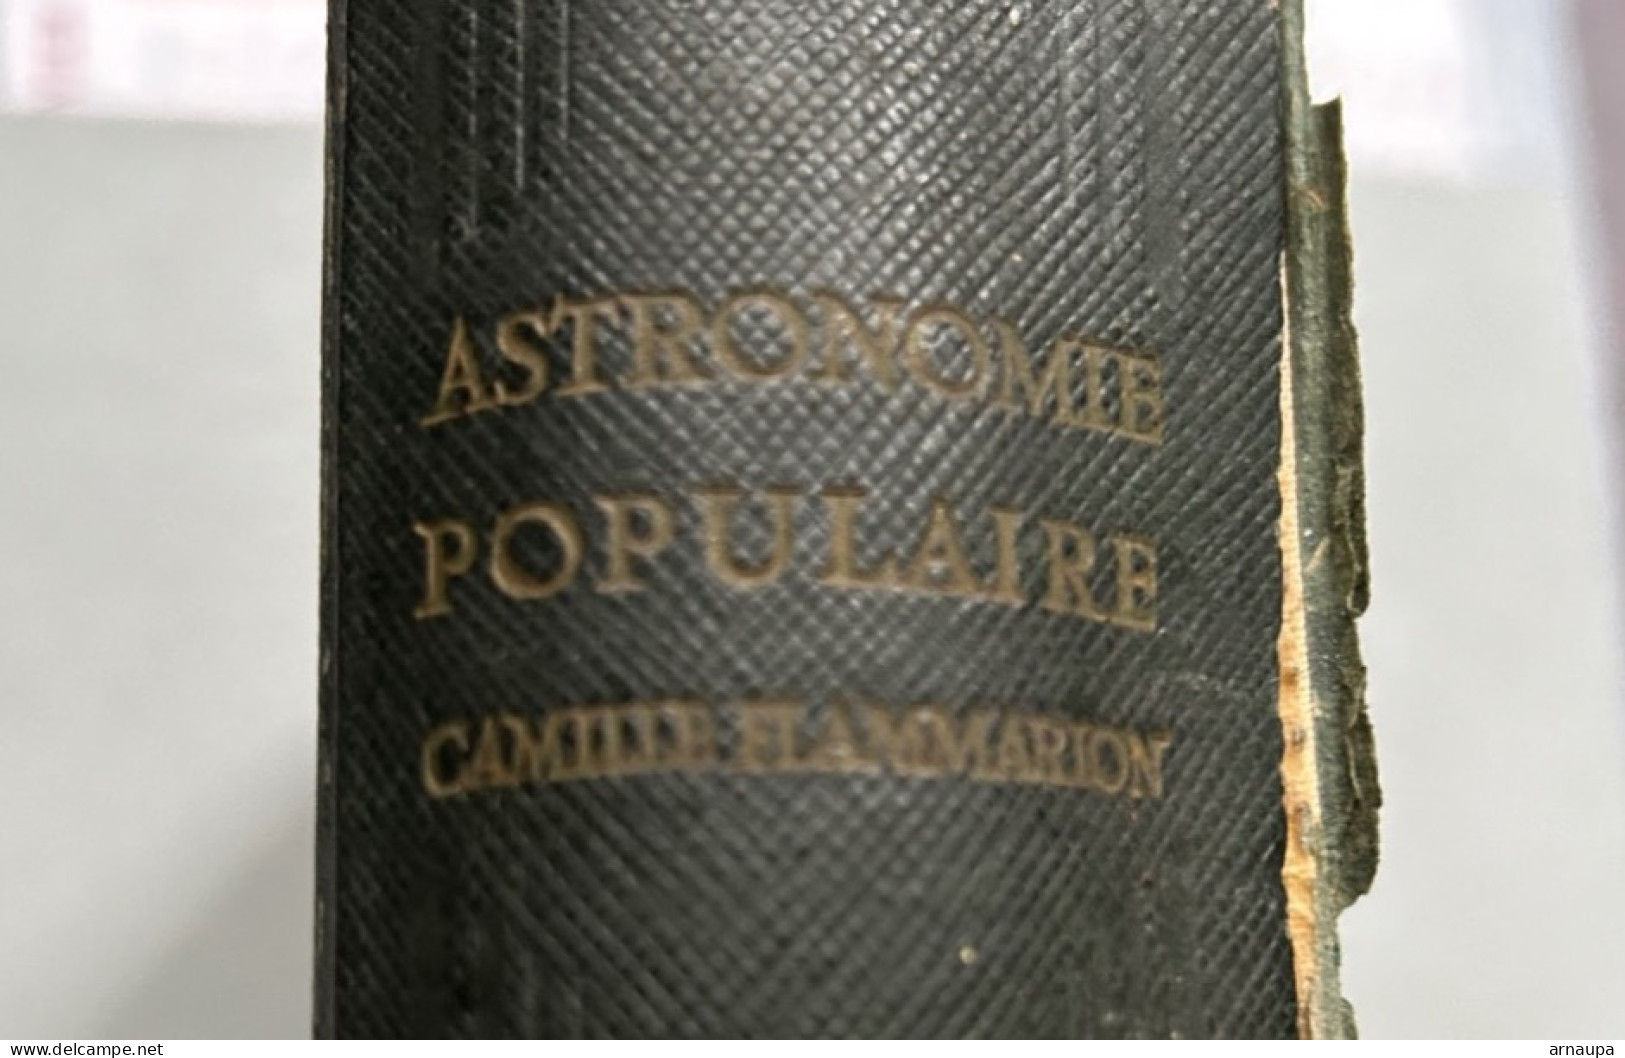 Astronomie Populaire Camille Flammarion 1953 - Enciclopedias